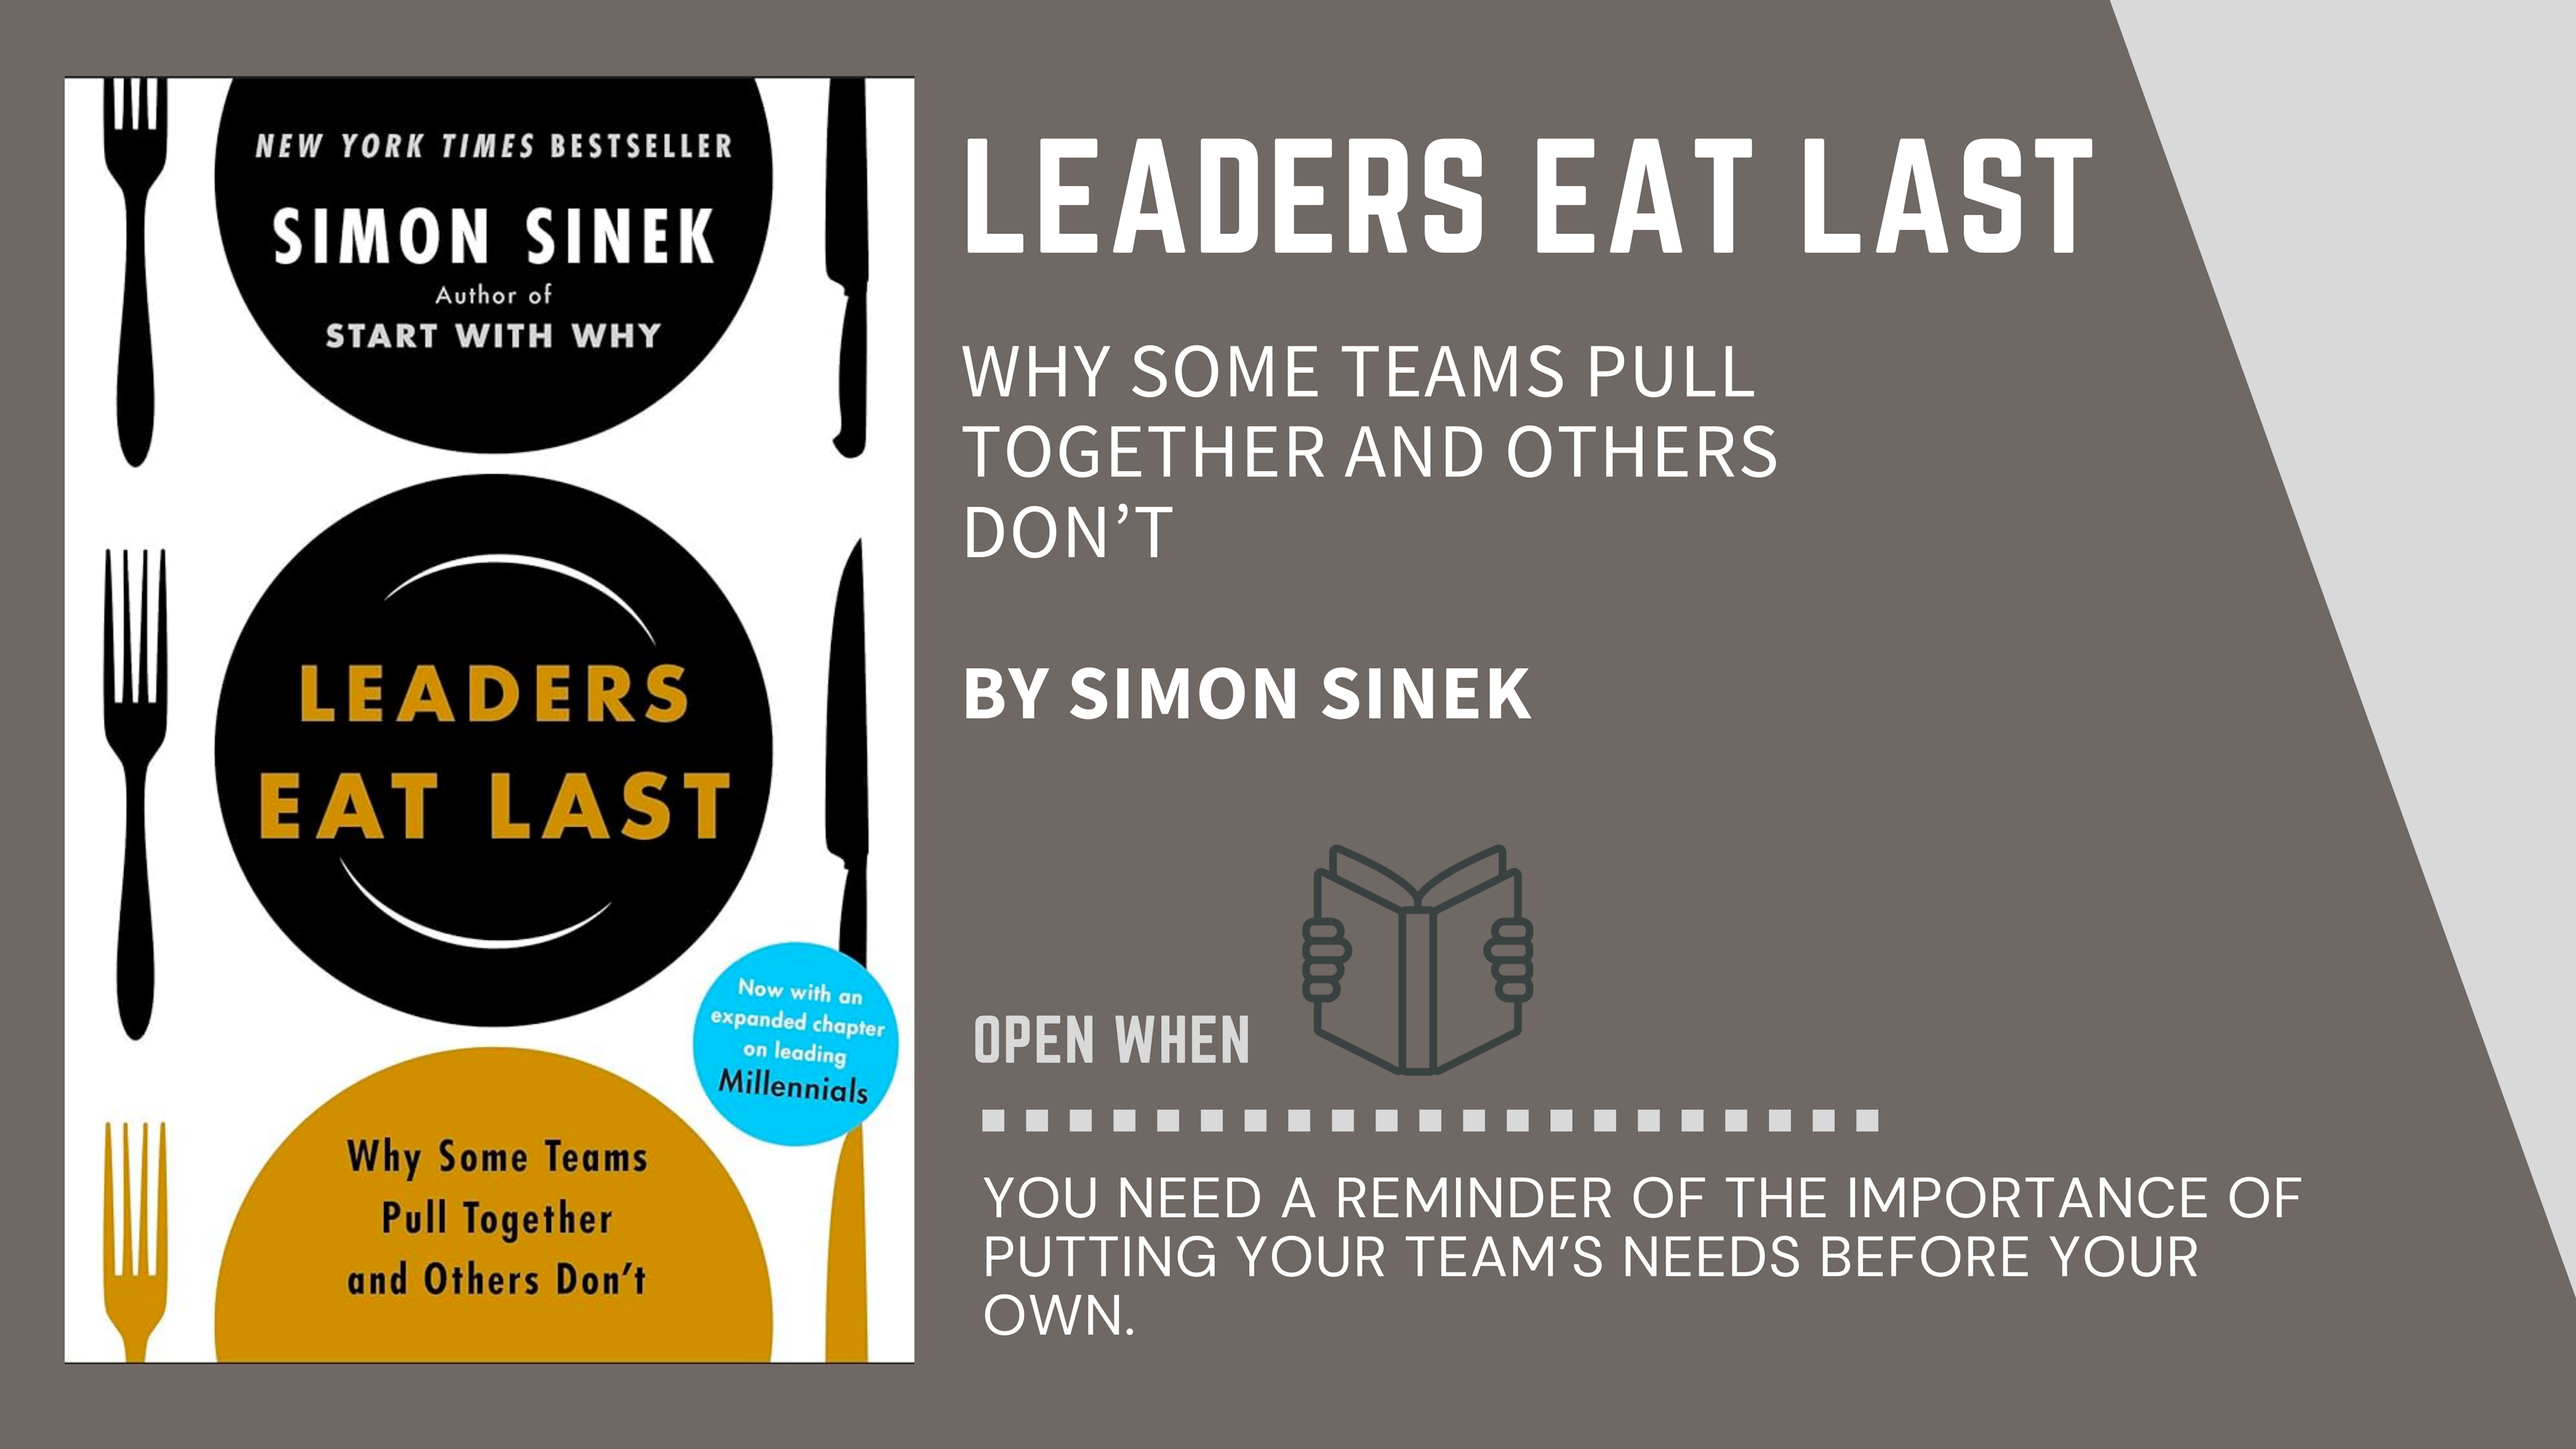 Book Cover of "Leaders Eat Last" by Simon Sinek